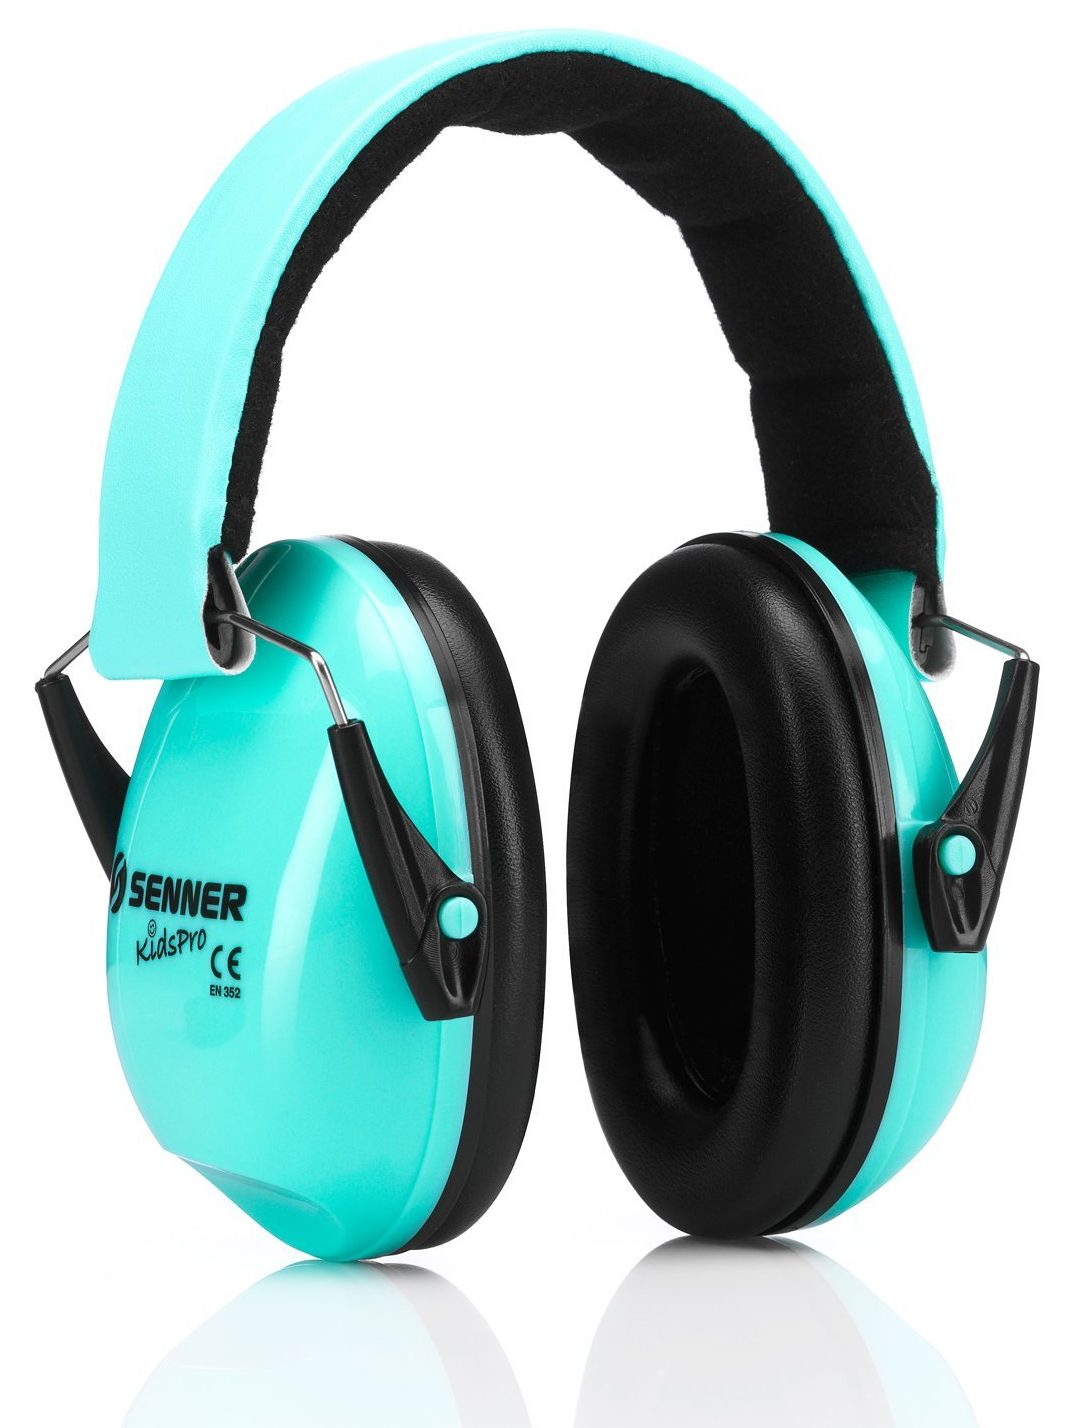 1-50 x HSM Gehörschutz Kapsel Kinder Lärmschutz Kopfhörer Gehörschutzbügel 